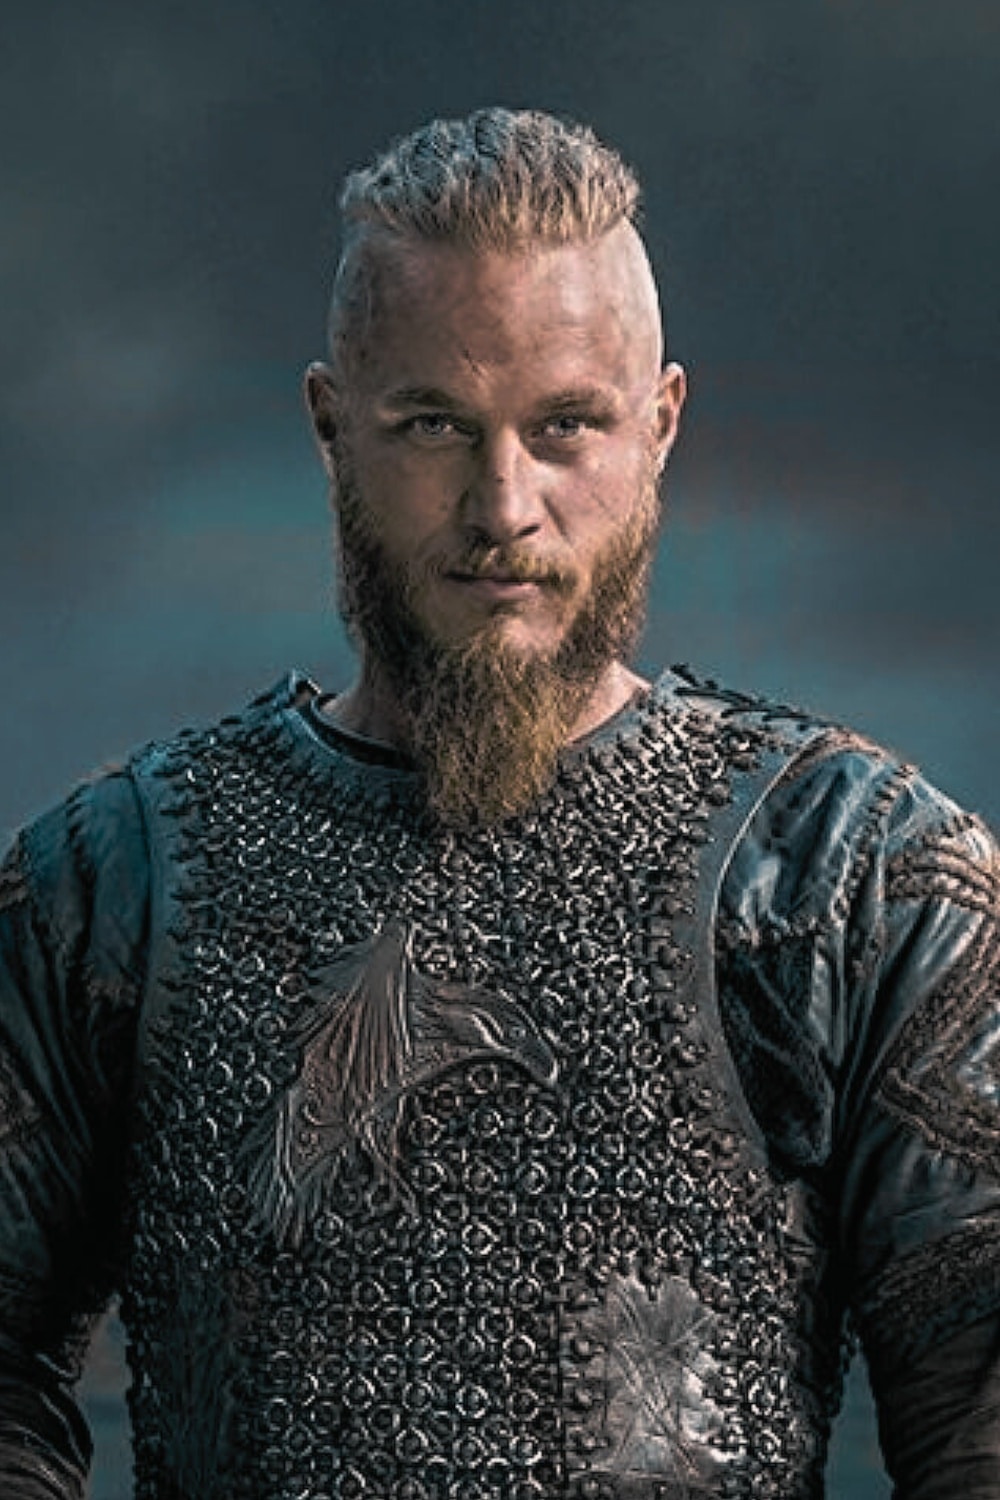 Les guerrières vikings légendaires et leurs histoires – Menviking